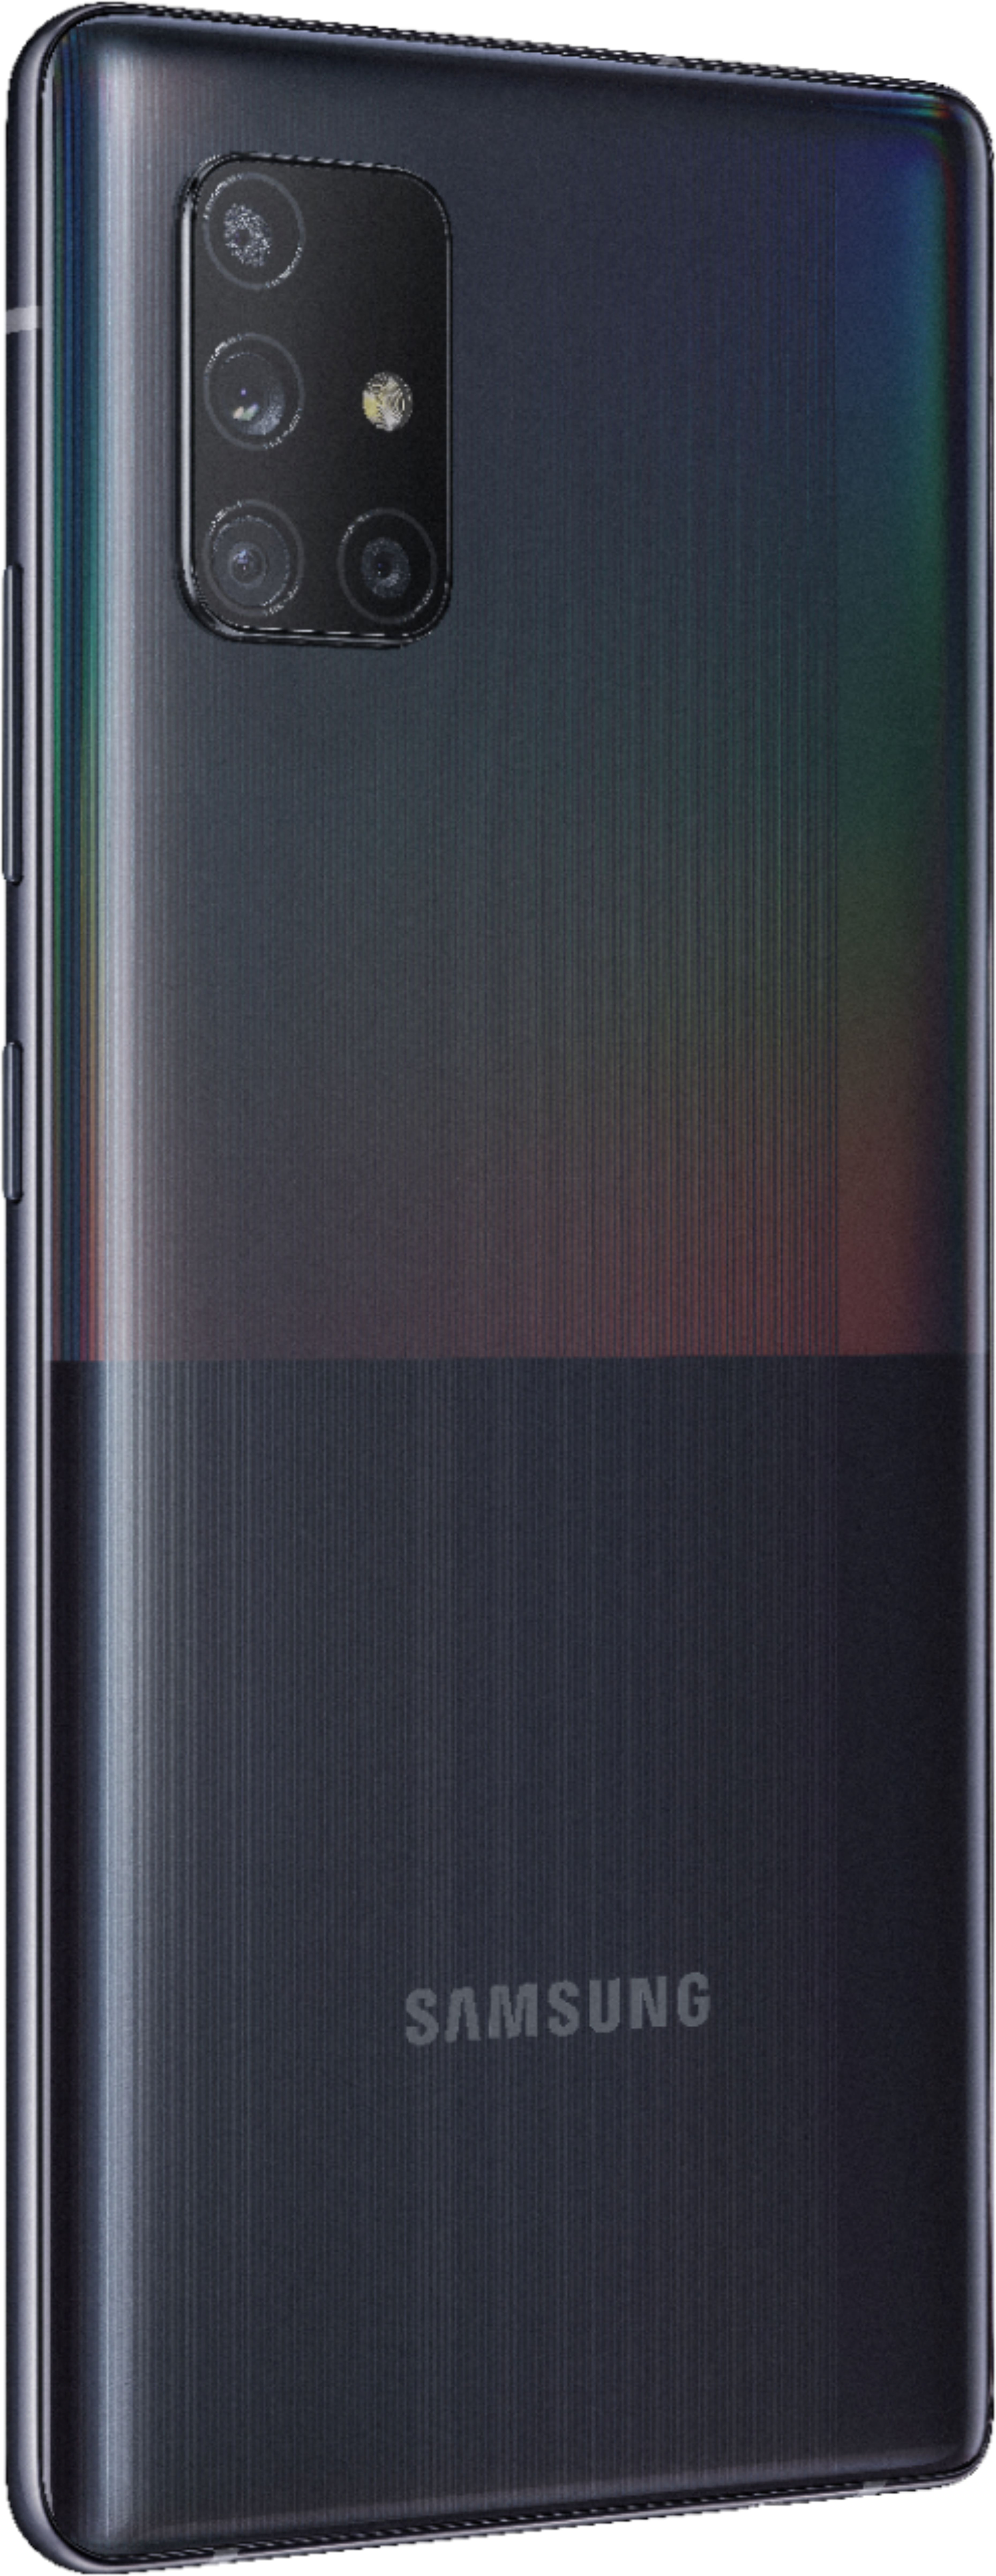 Best Buy: Samsung Galaxy A71 5G 128GB Prism Cube Black (AT&T) SM-A716U